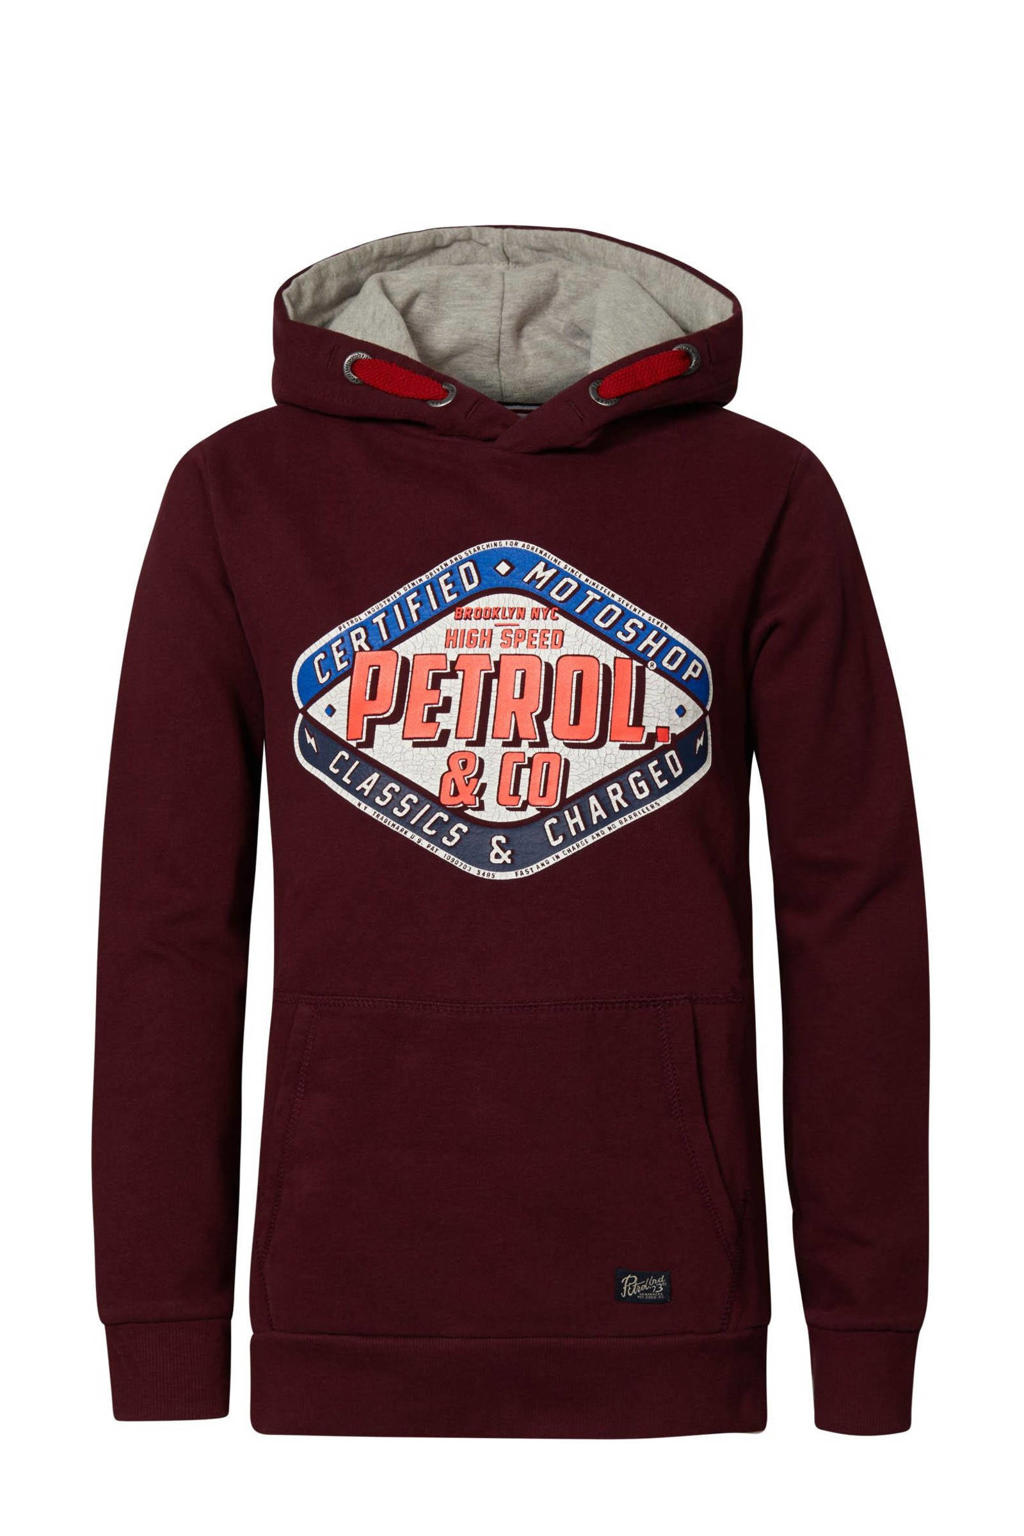 Petrol Industries hoodie met logo donkerrood